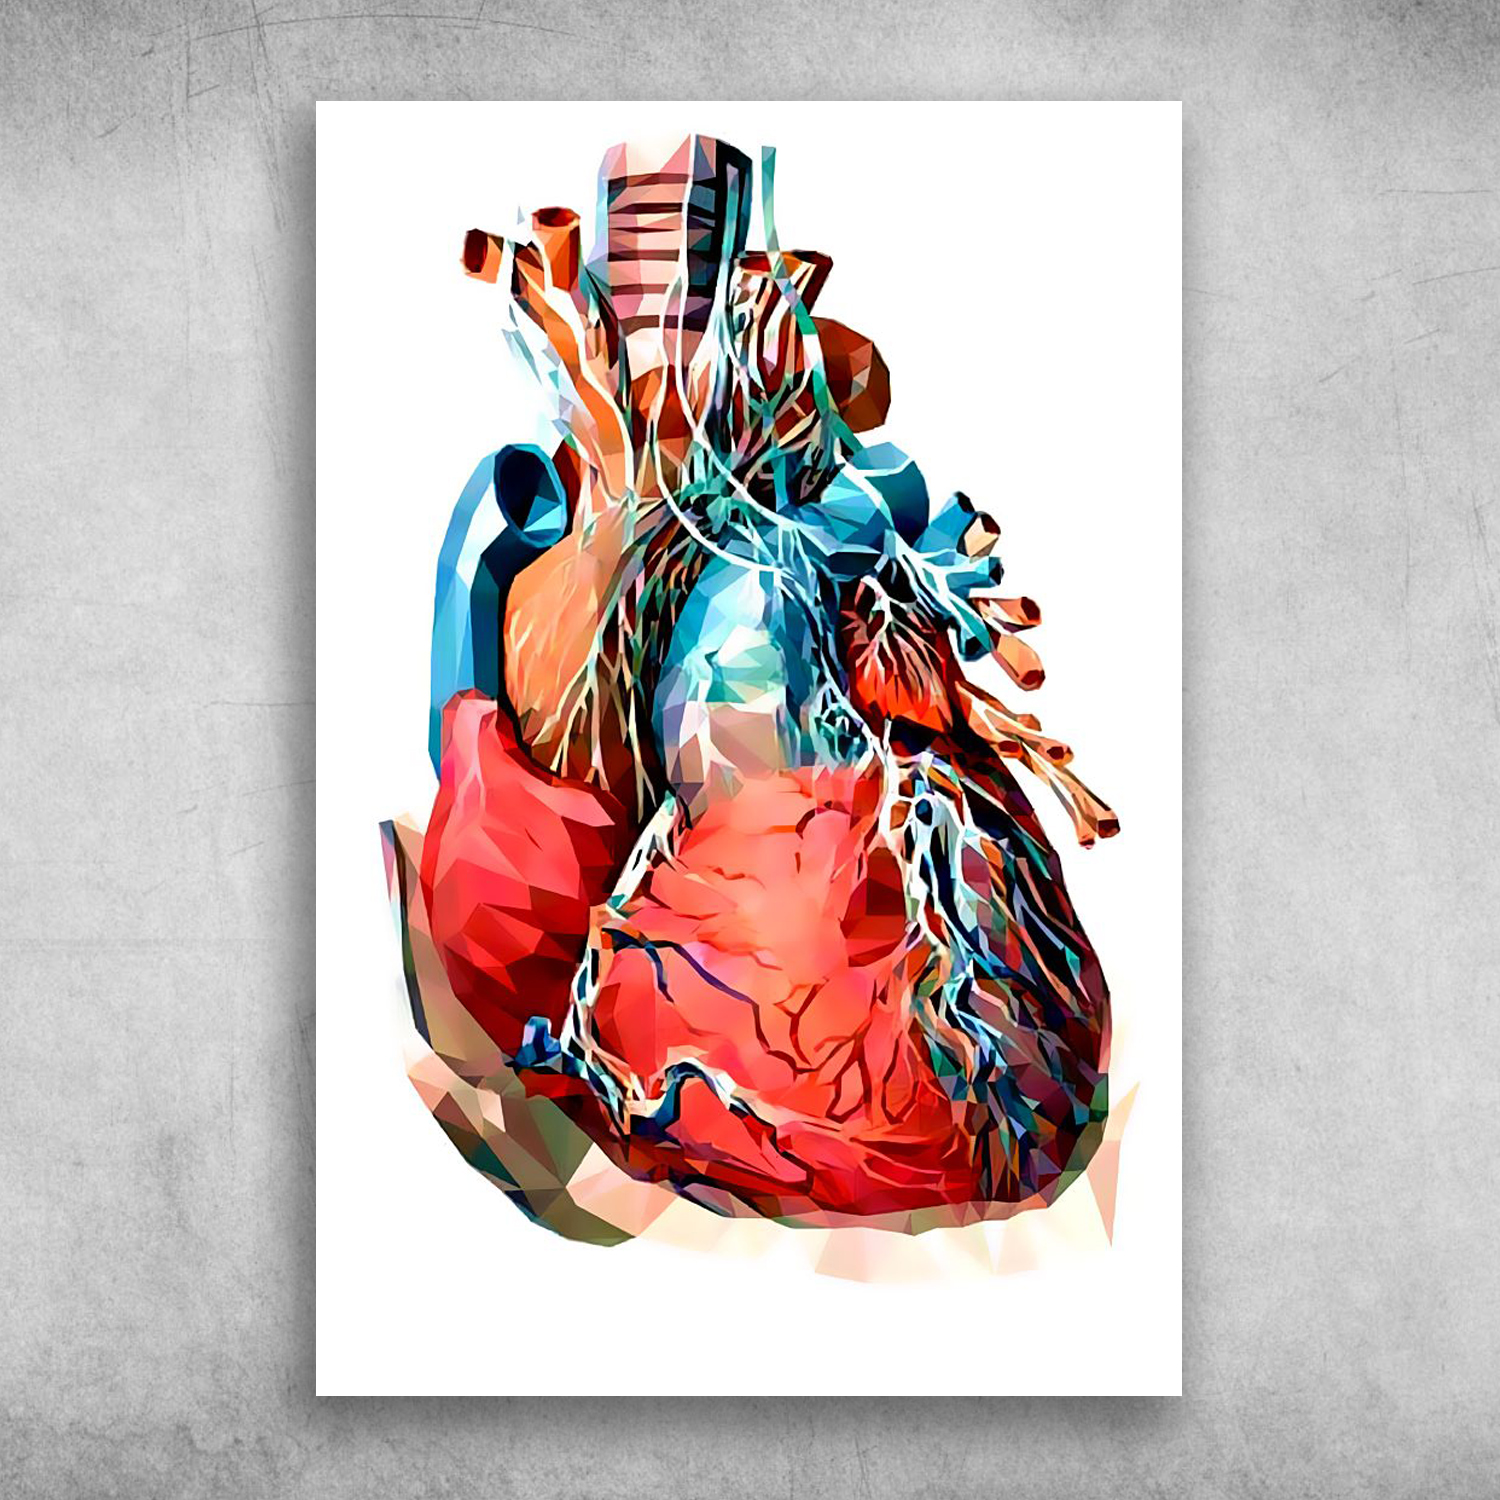 artistic heart drawings